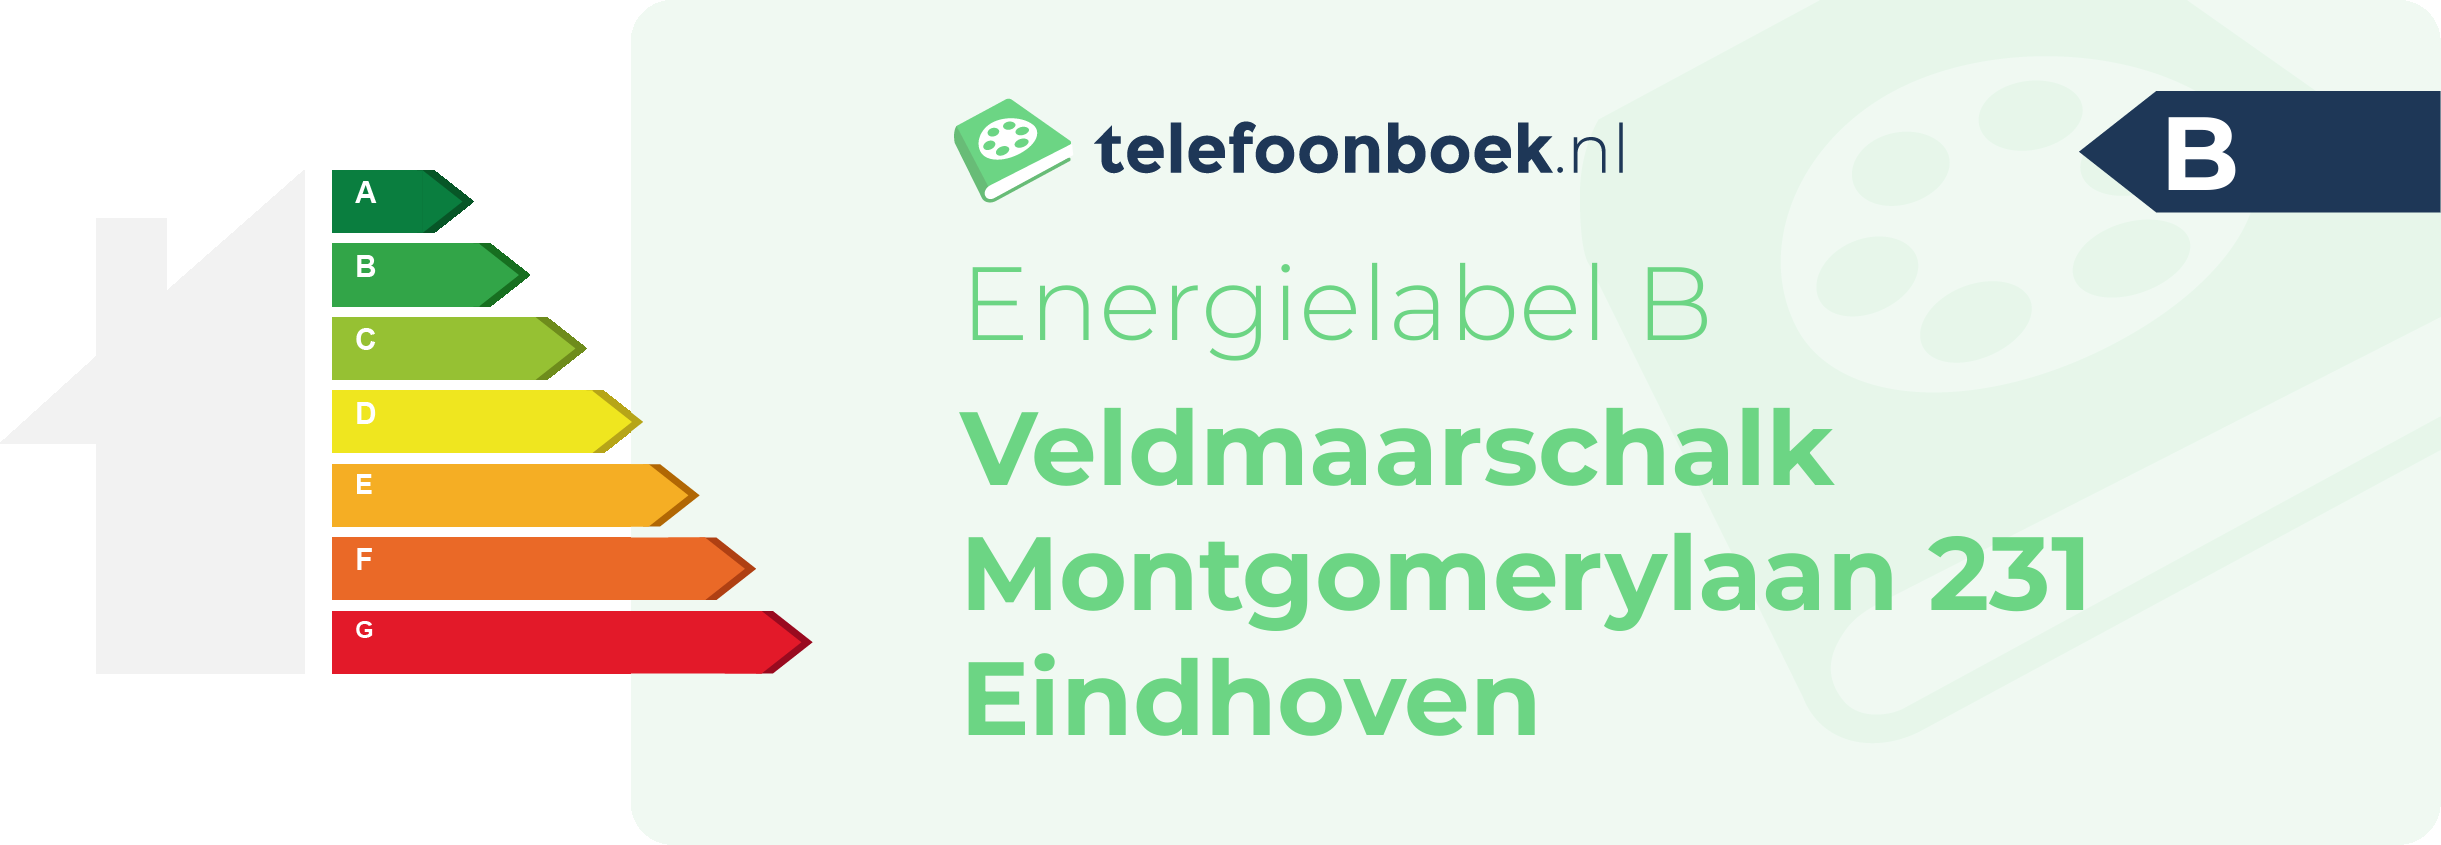 Energielabel Veldmaarschalk Montgomerylaan 231 Eindhoven